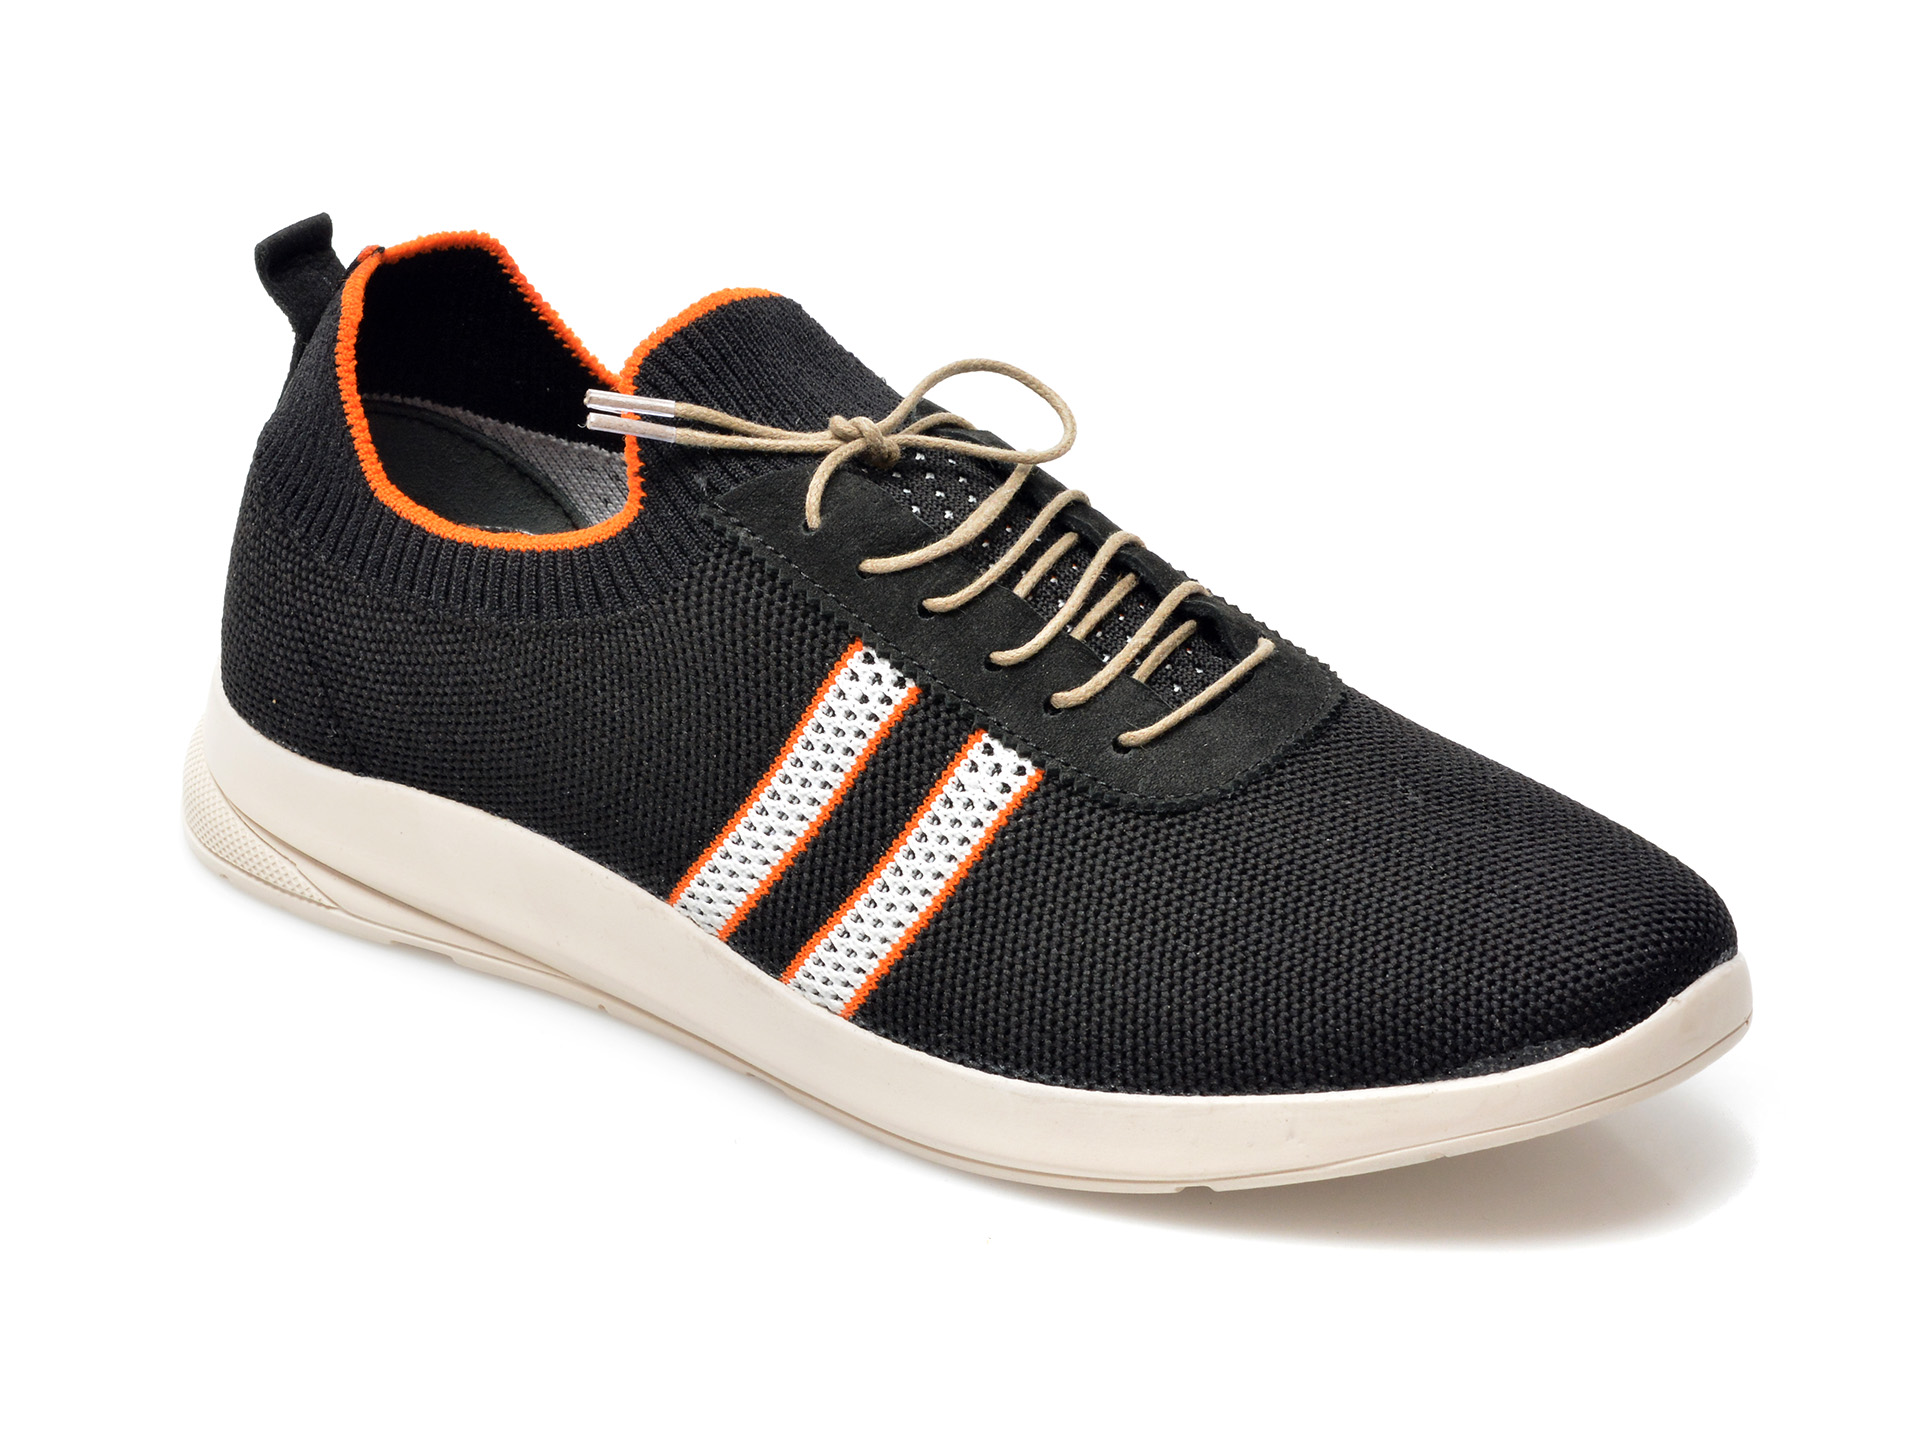 Pantofi sport ENES negri, 22300, din material textil /barbati/pantofi